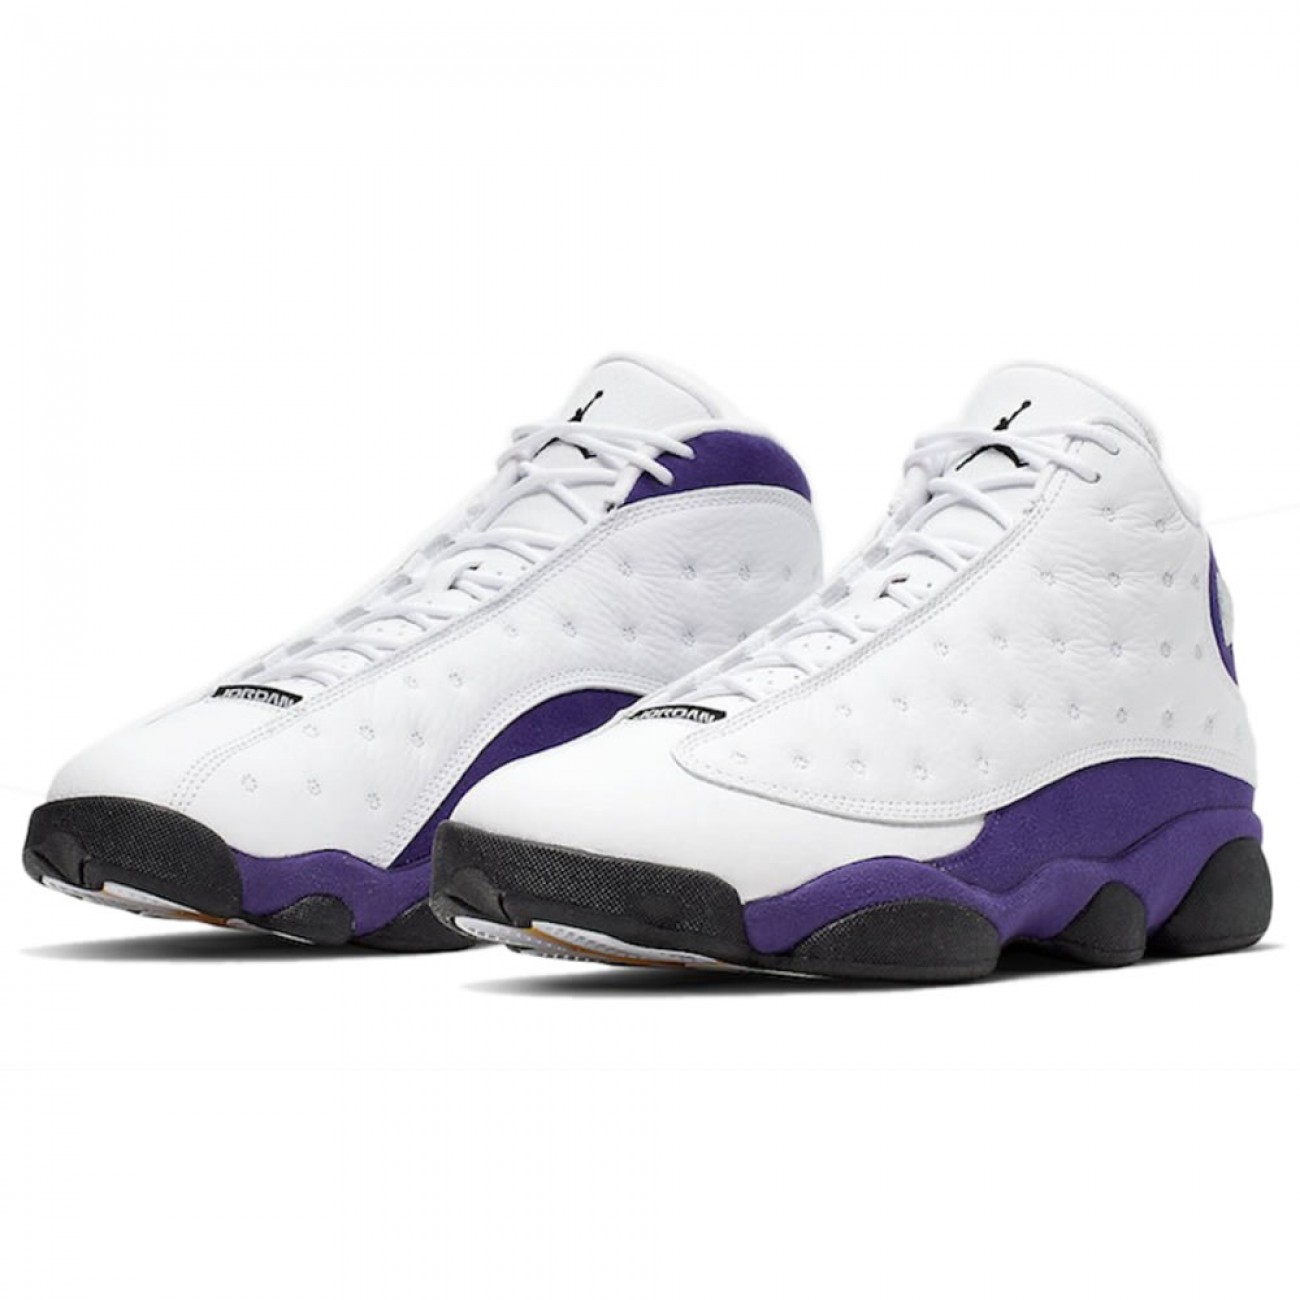 Air Jordan 13 "Lakers" White Black Court Purple University Gold 414571-105